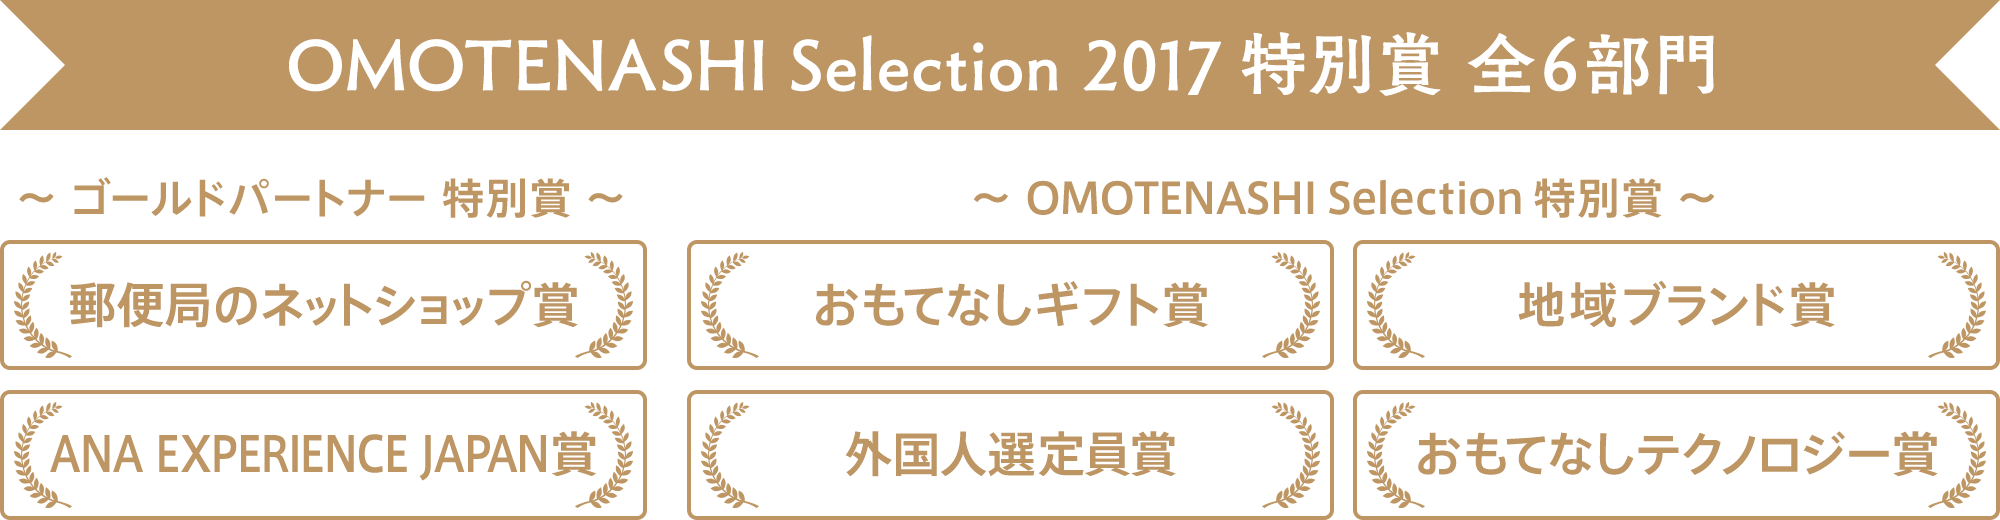 OMOTENASHI Selection 2017 特別賞 全6部門